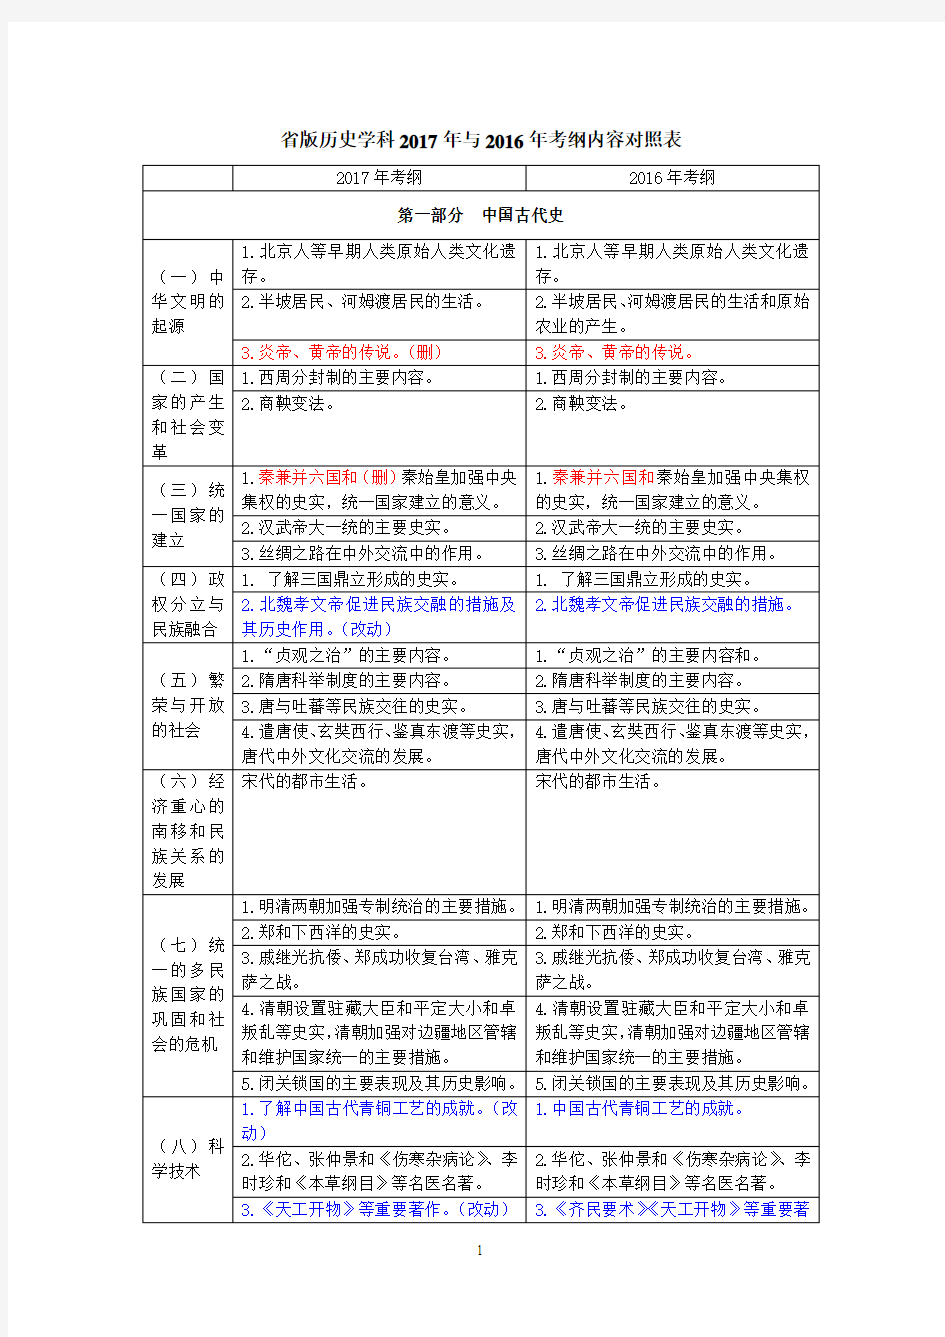 广东省16和17年历史学科考纲对照表